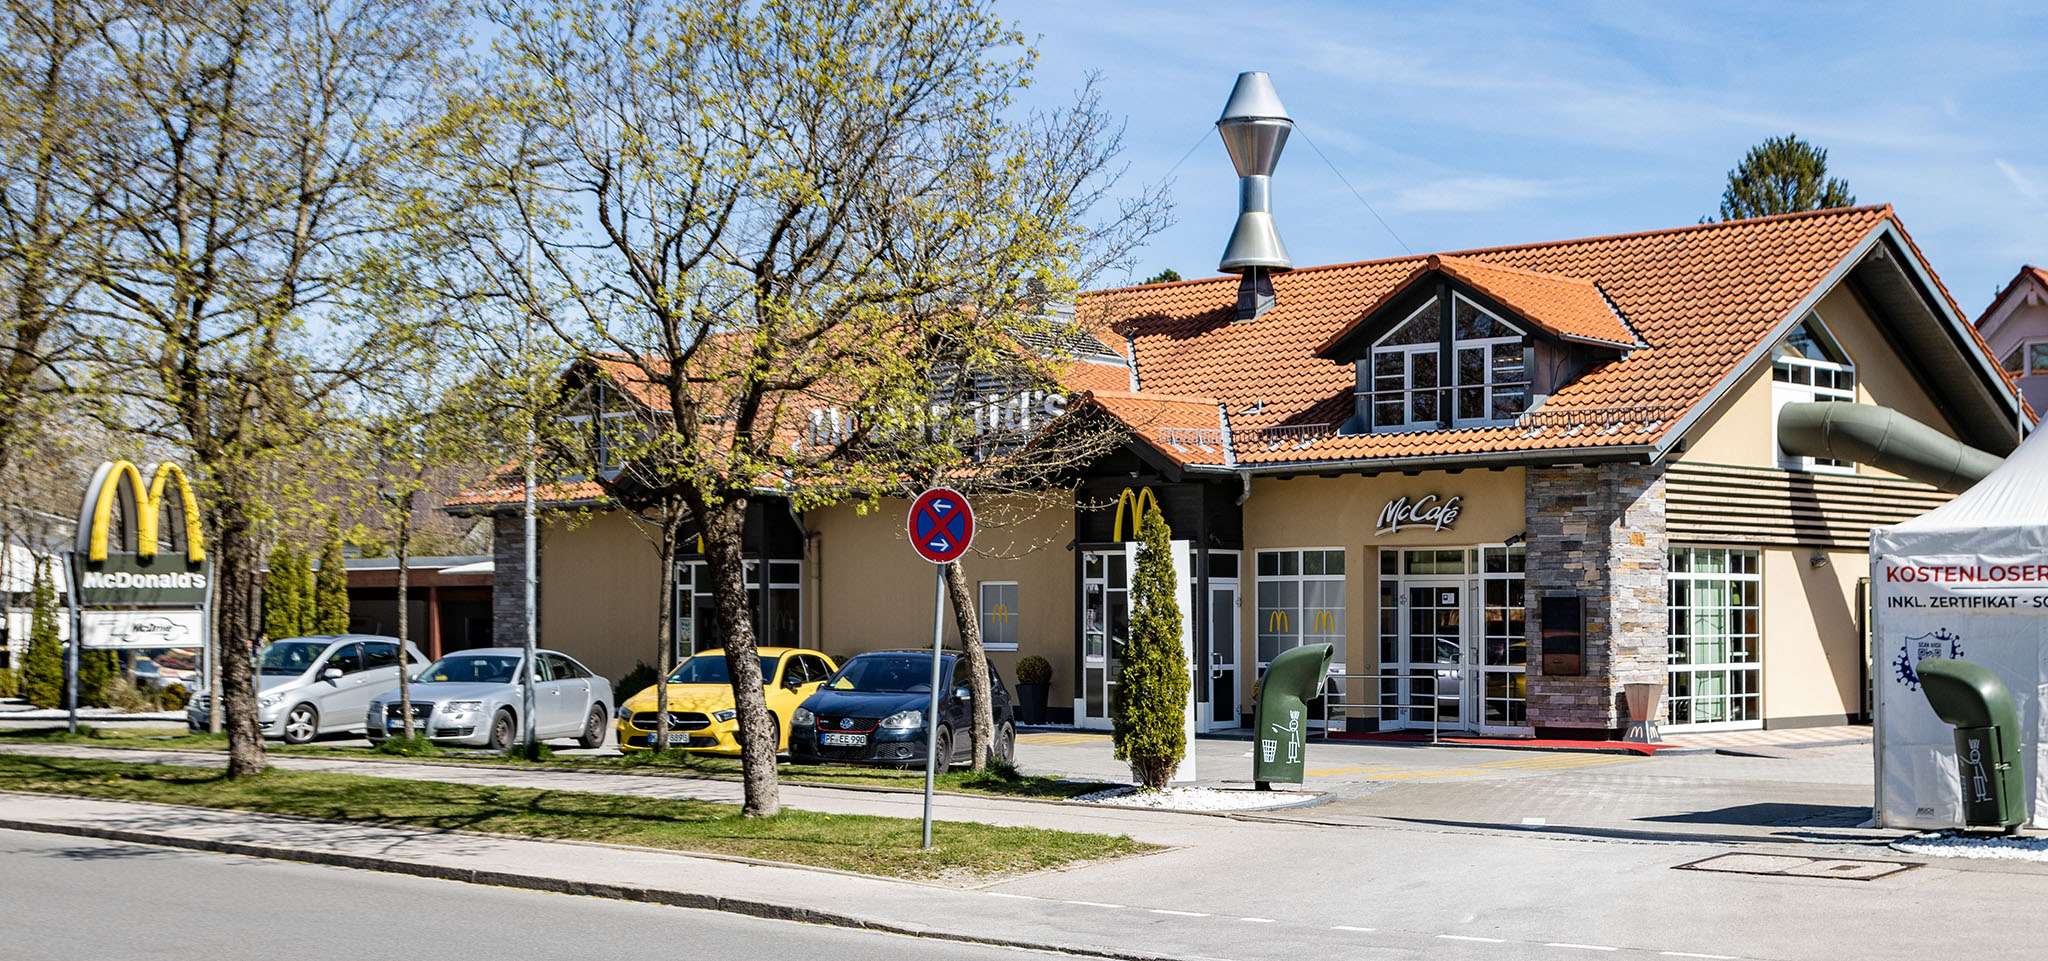 Das McDonald’s-Restaurant in Grünwald